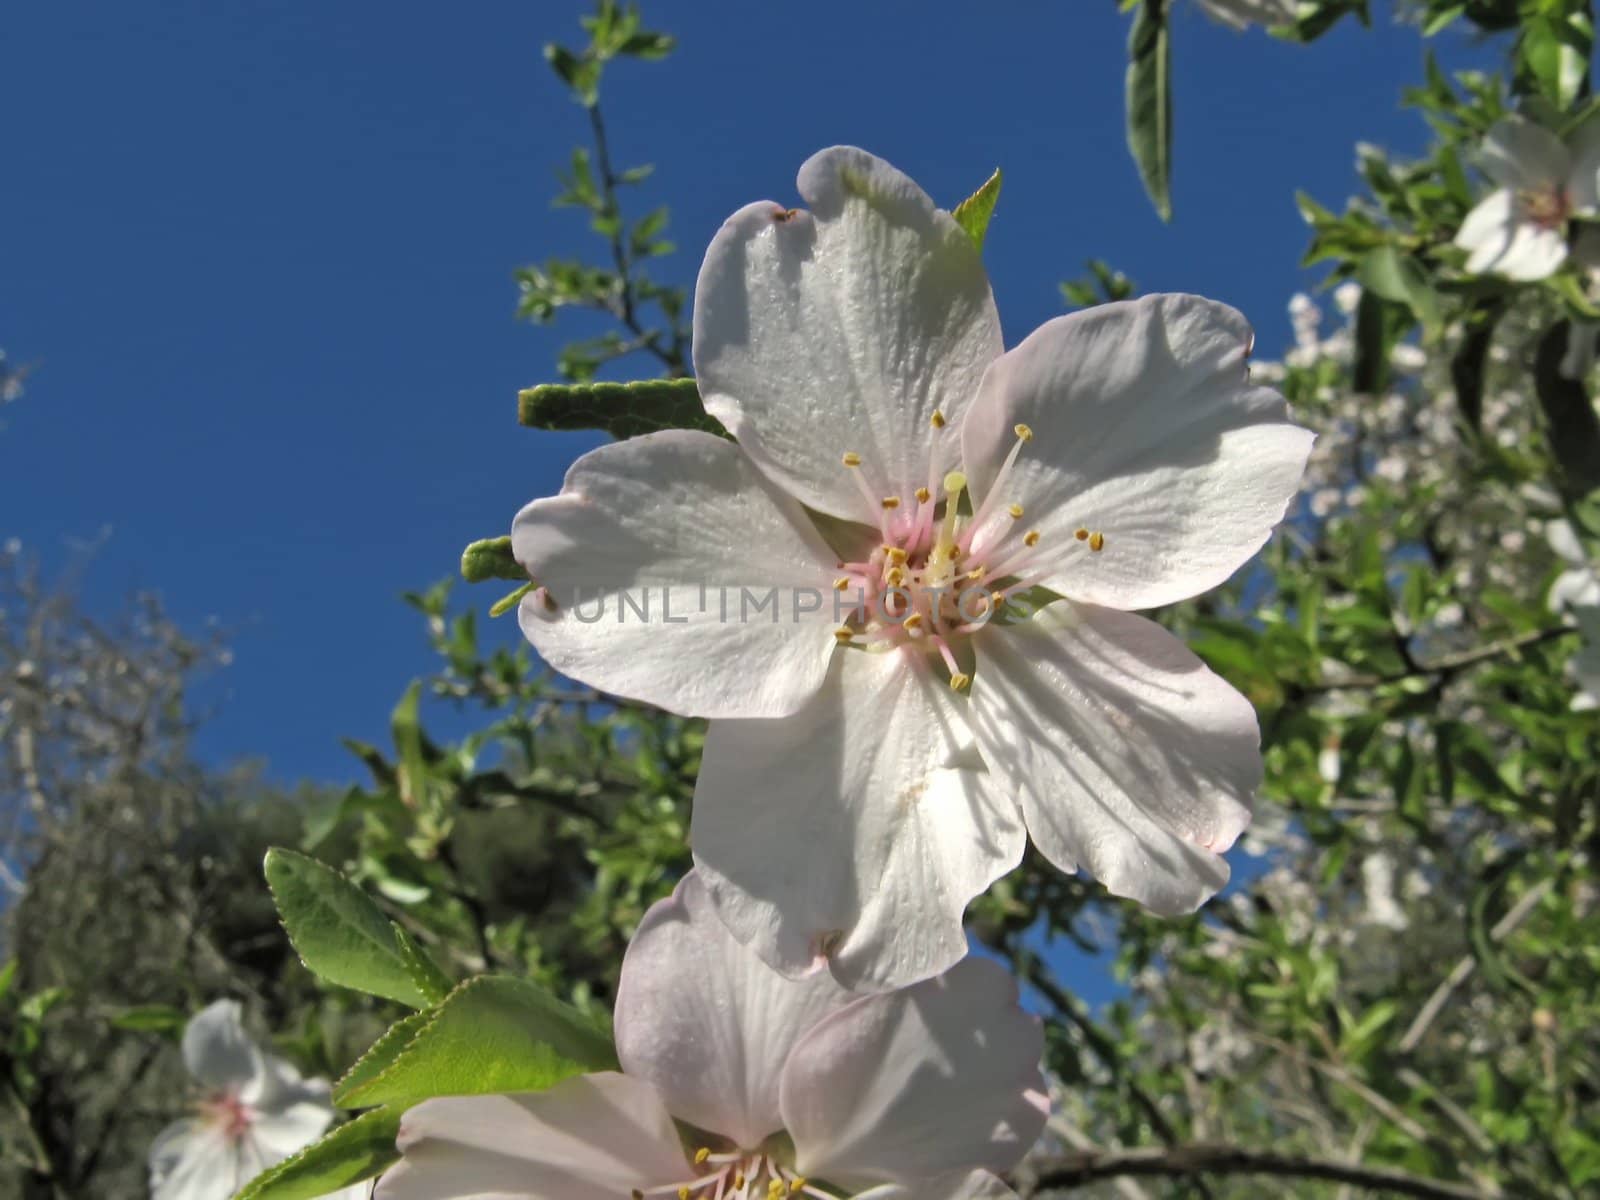 almond flowers by jbouzou